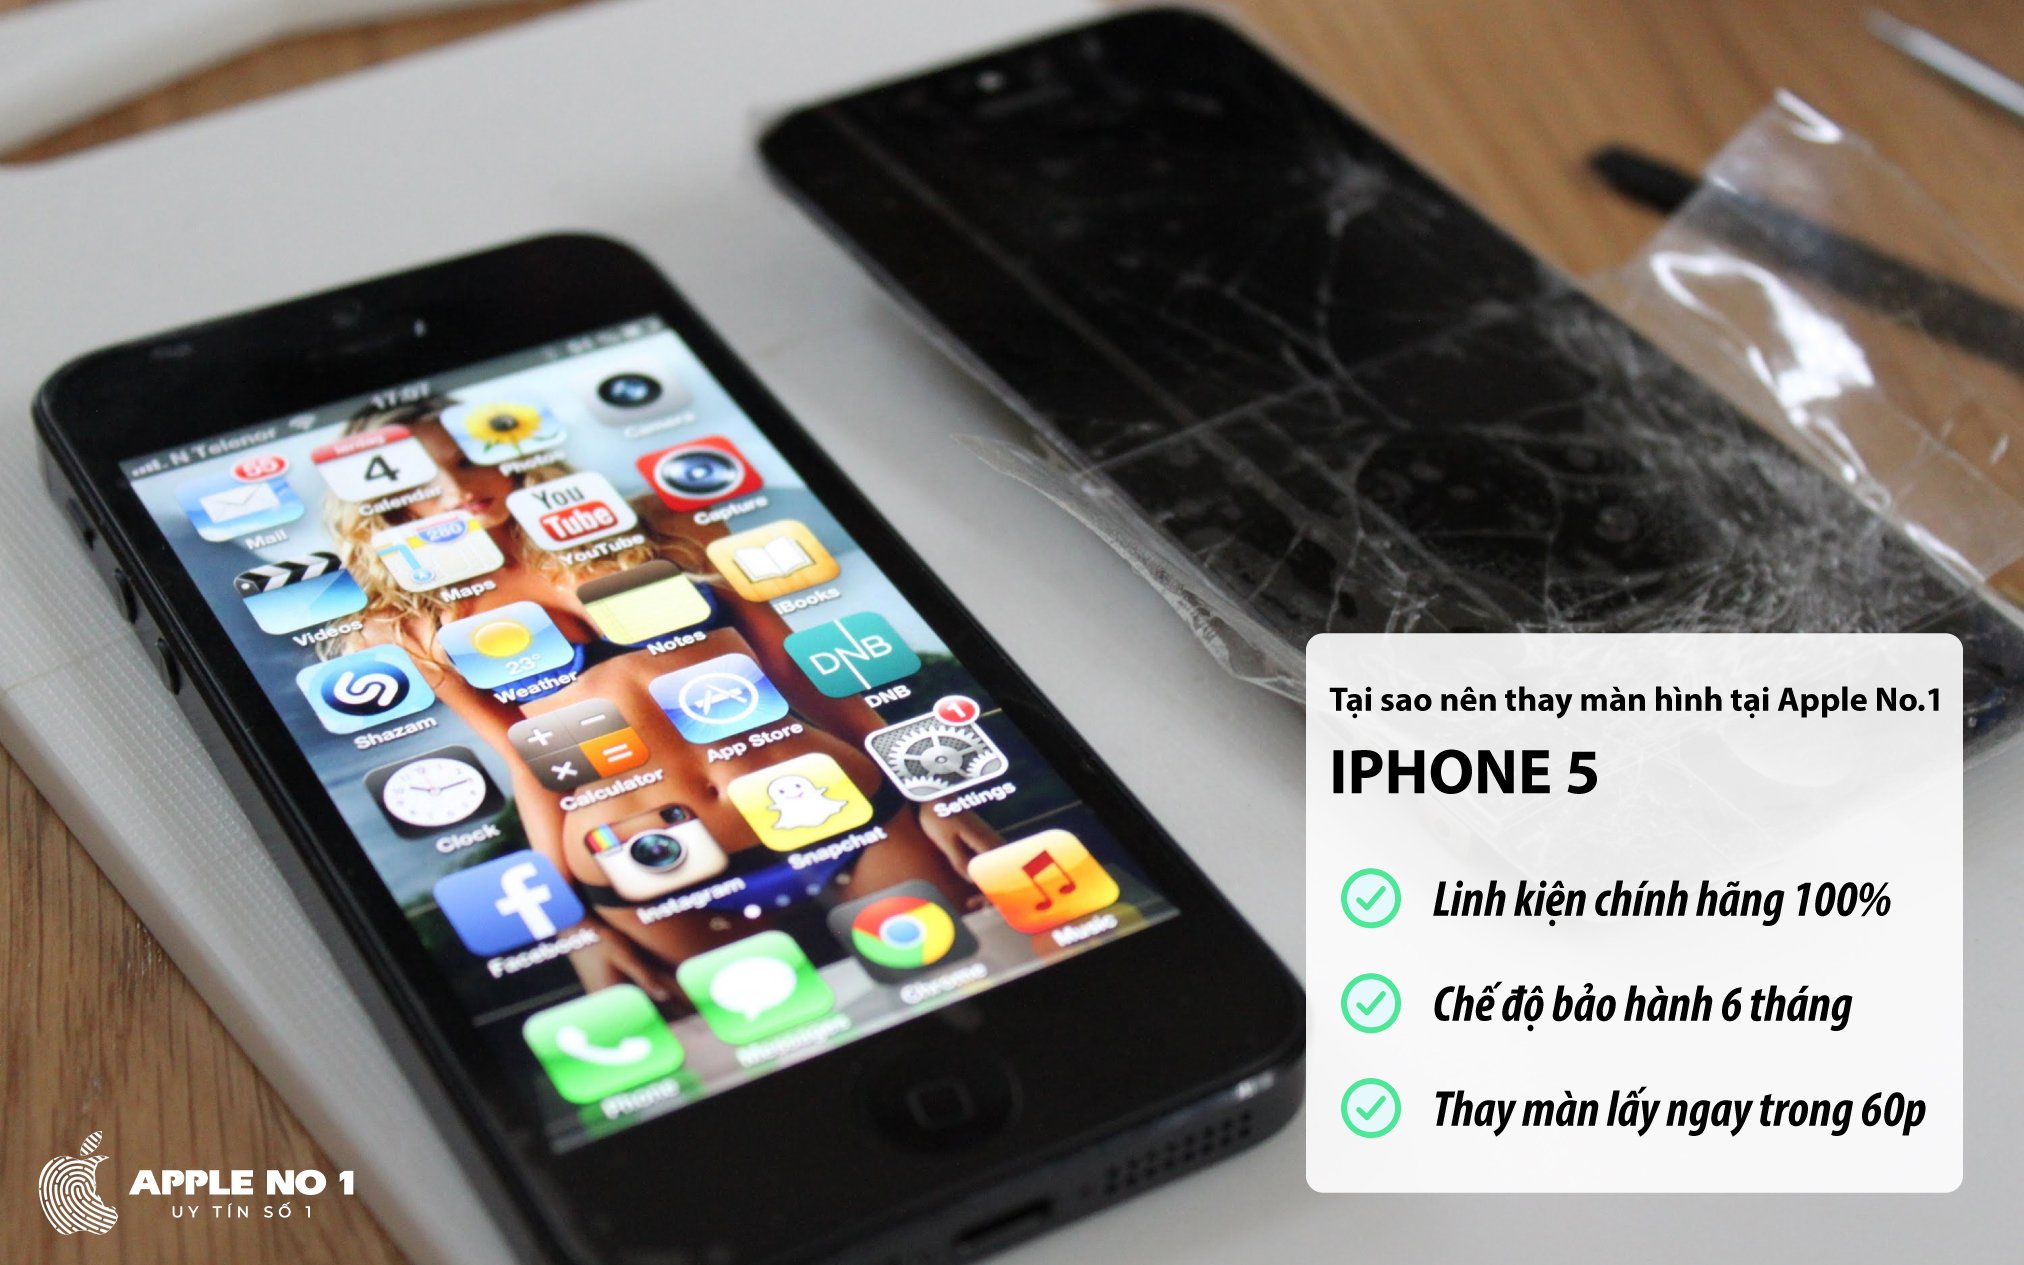 Thay màn hình iPhone 5 chính hãng, giá rẻ tại Apple No.1